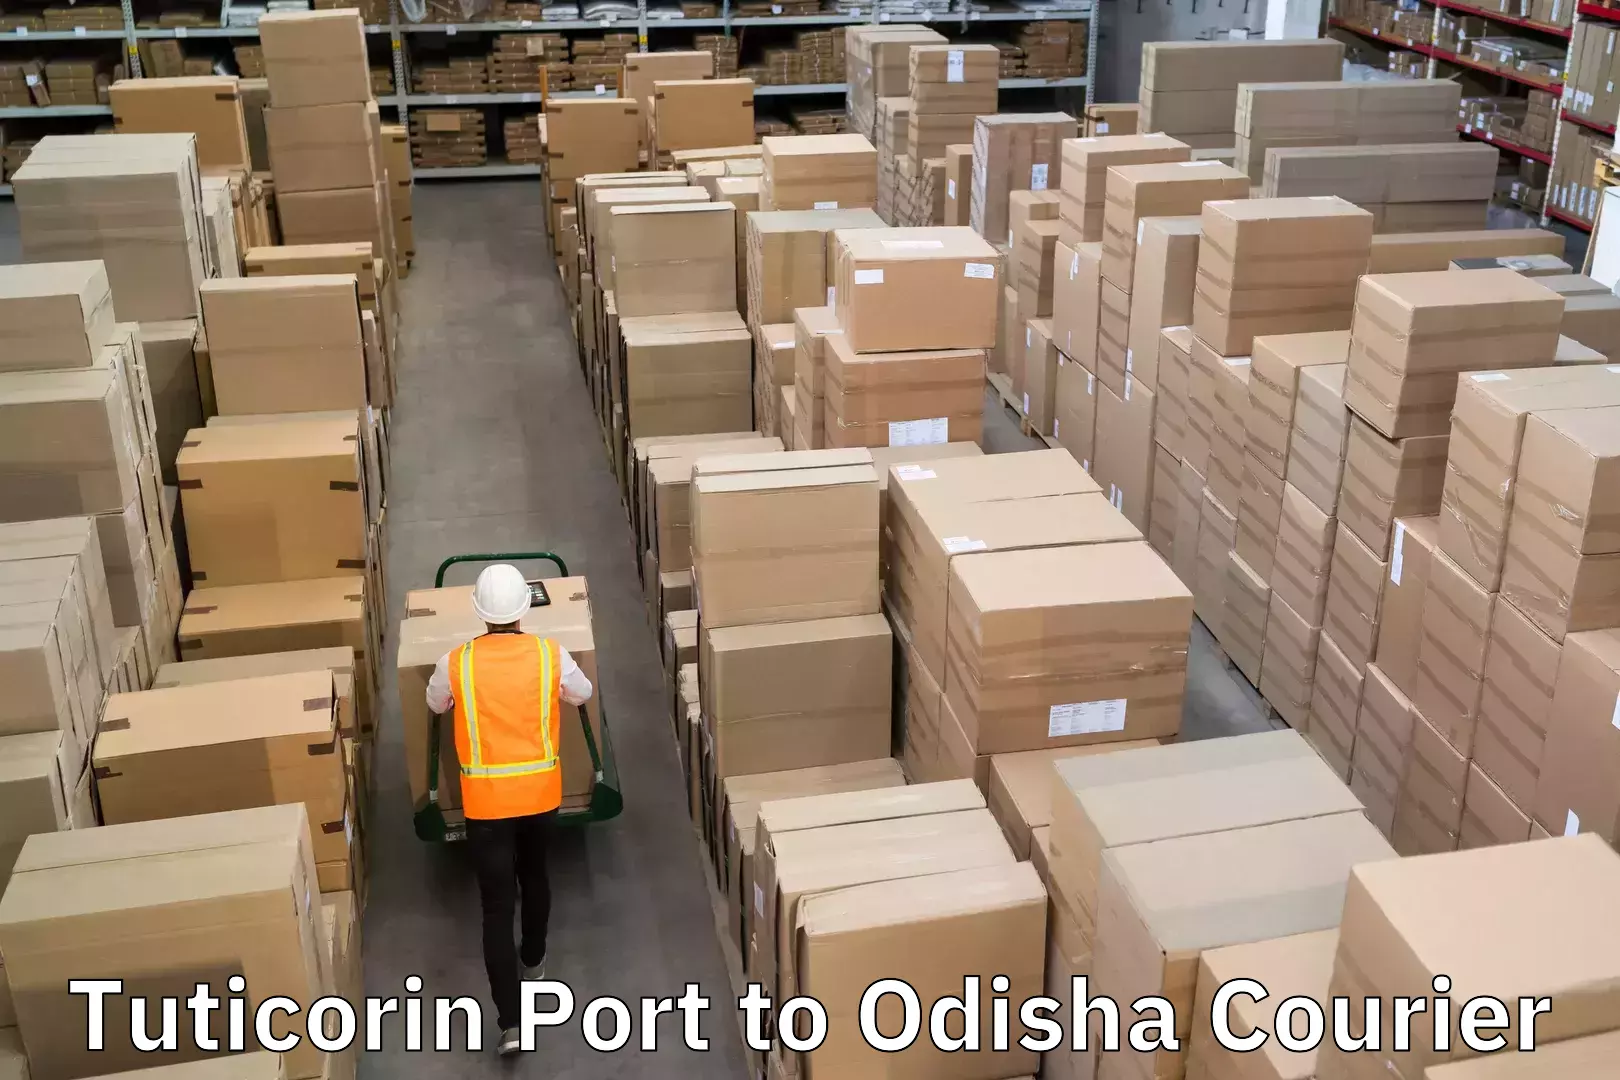 Speedy delivery service in Tuticorin Port to Odisha